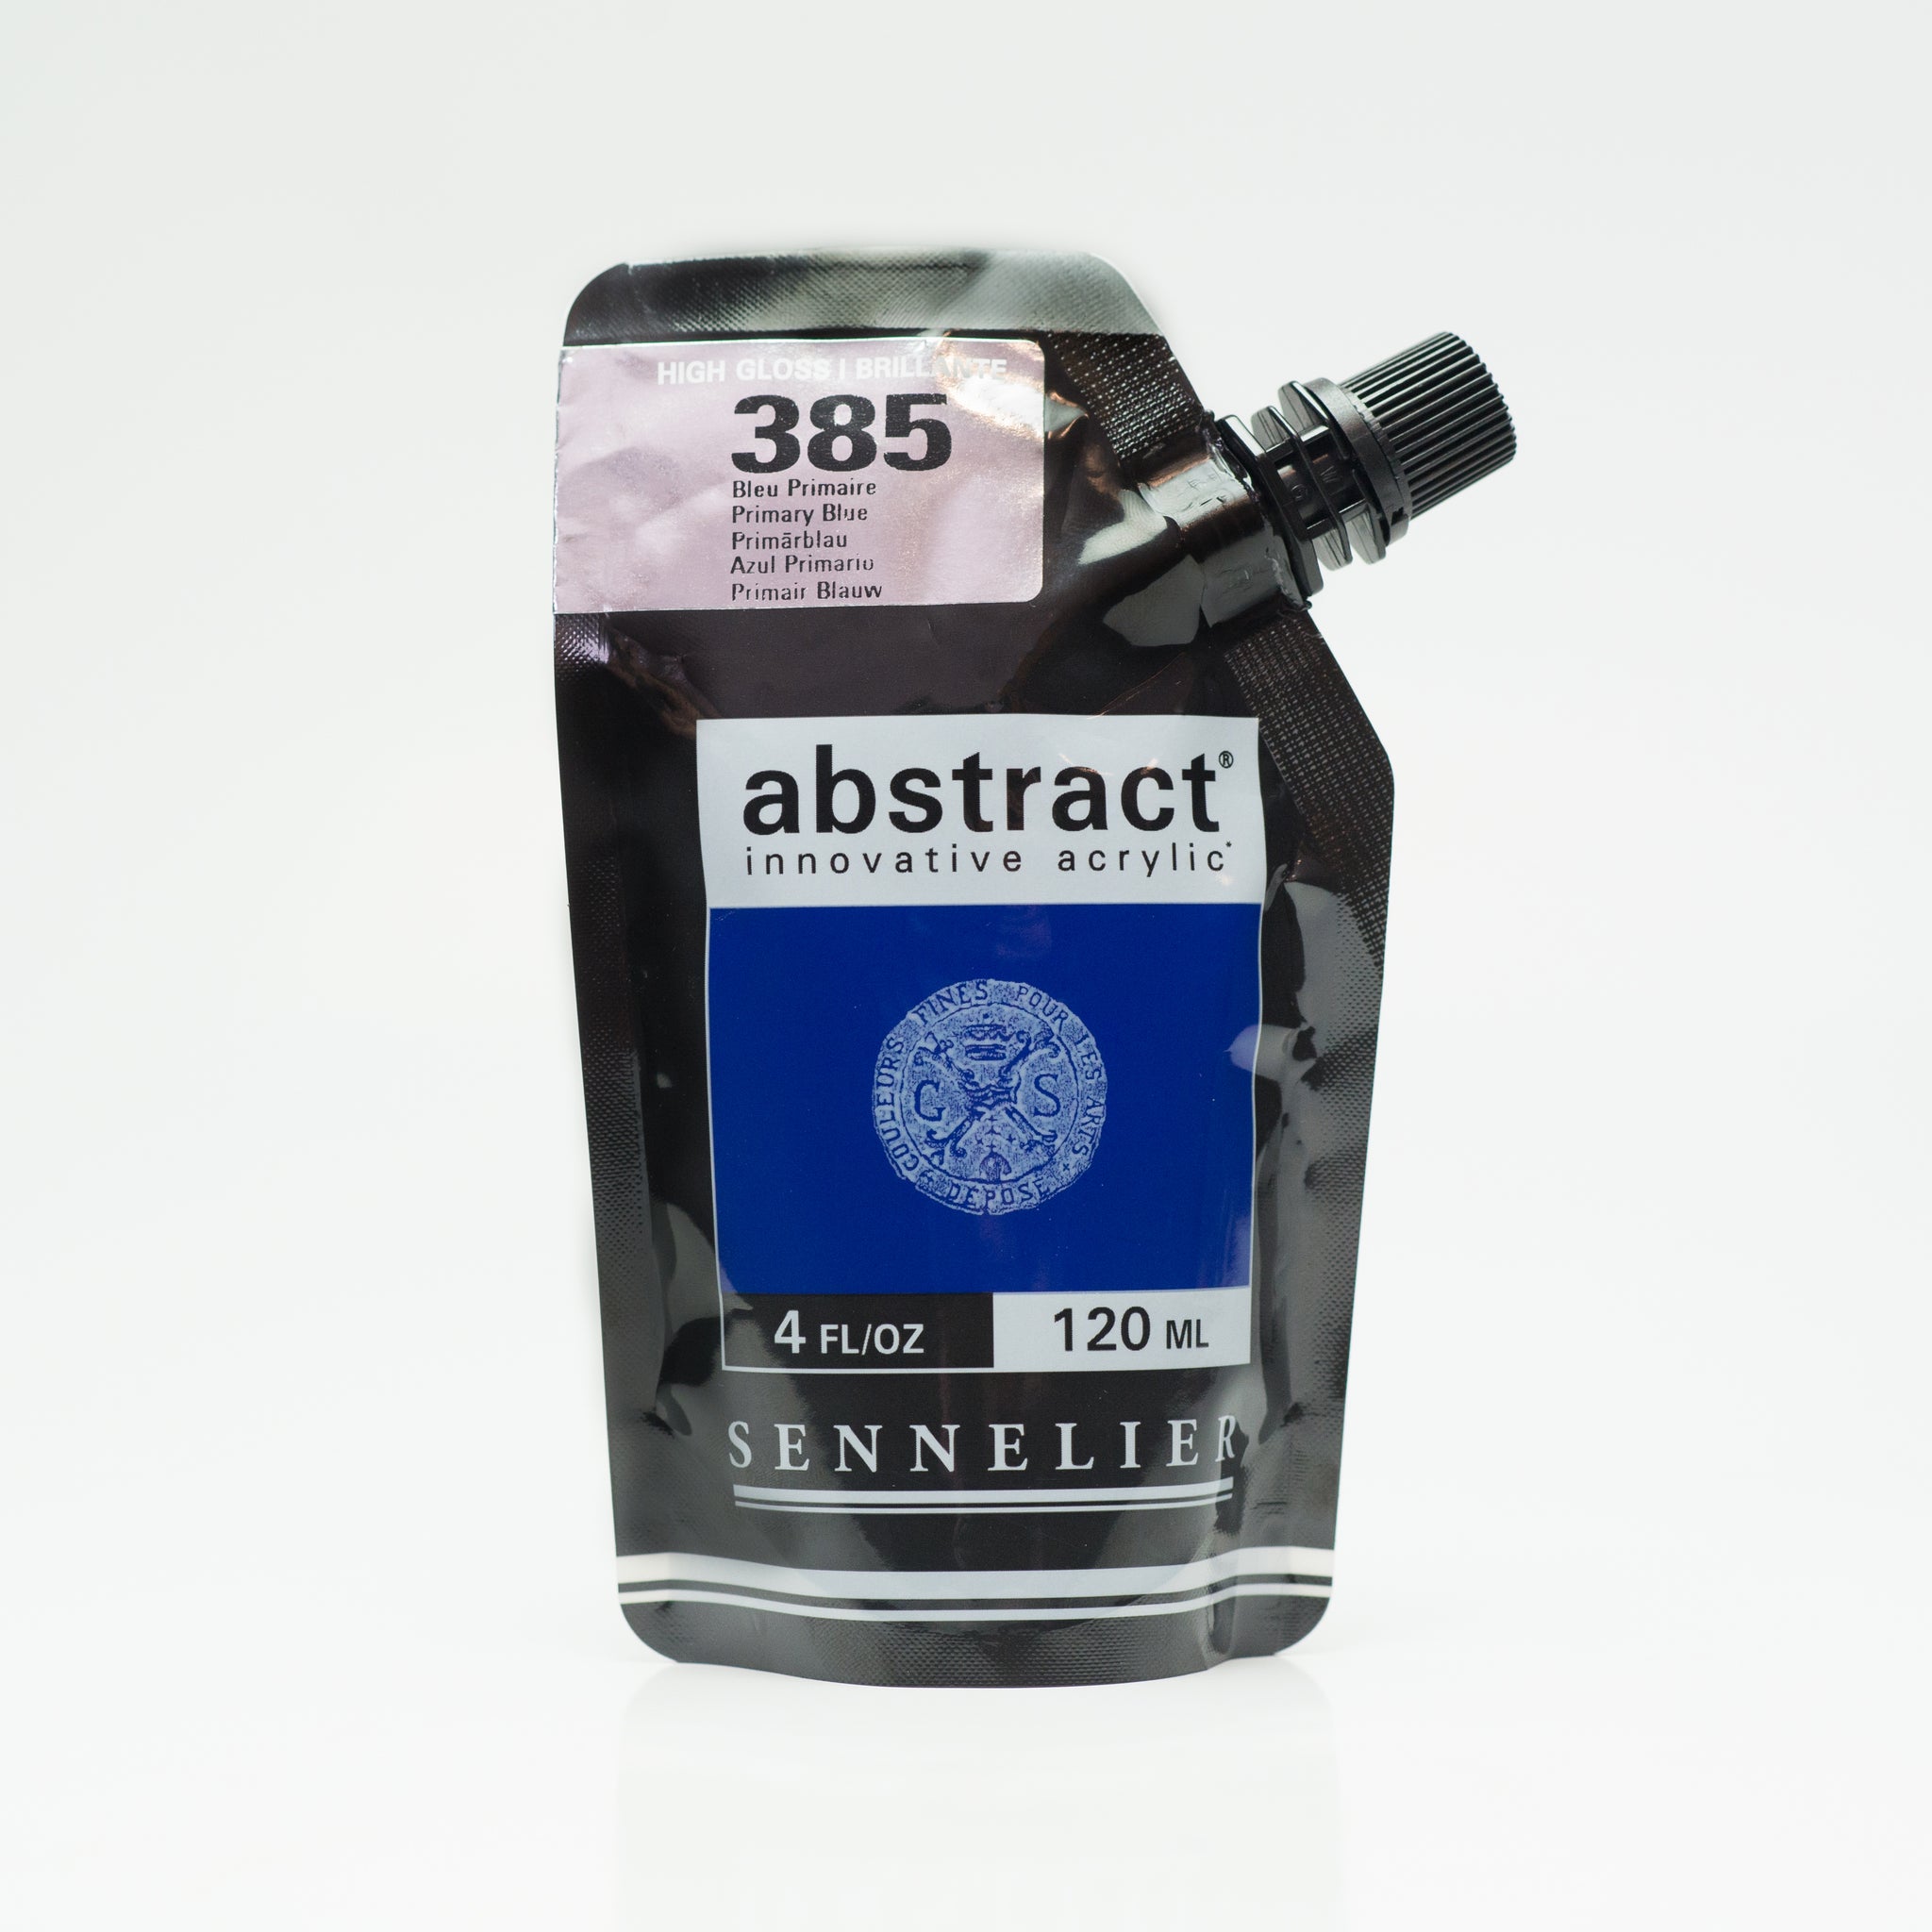 Sennelier Abstract Acrylic High Gloss 120ml